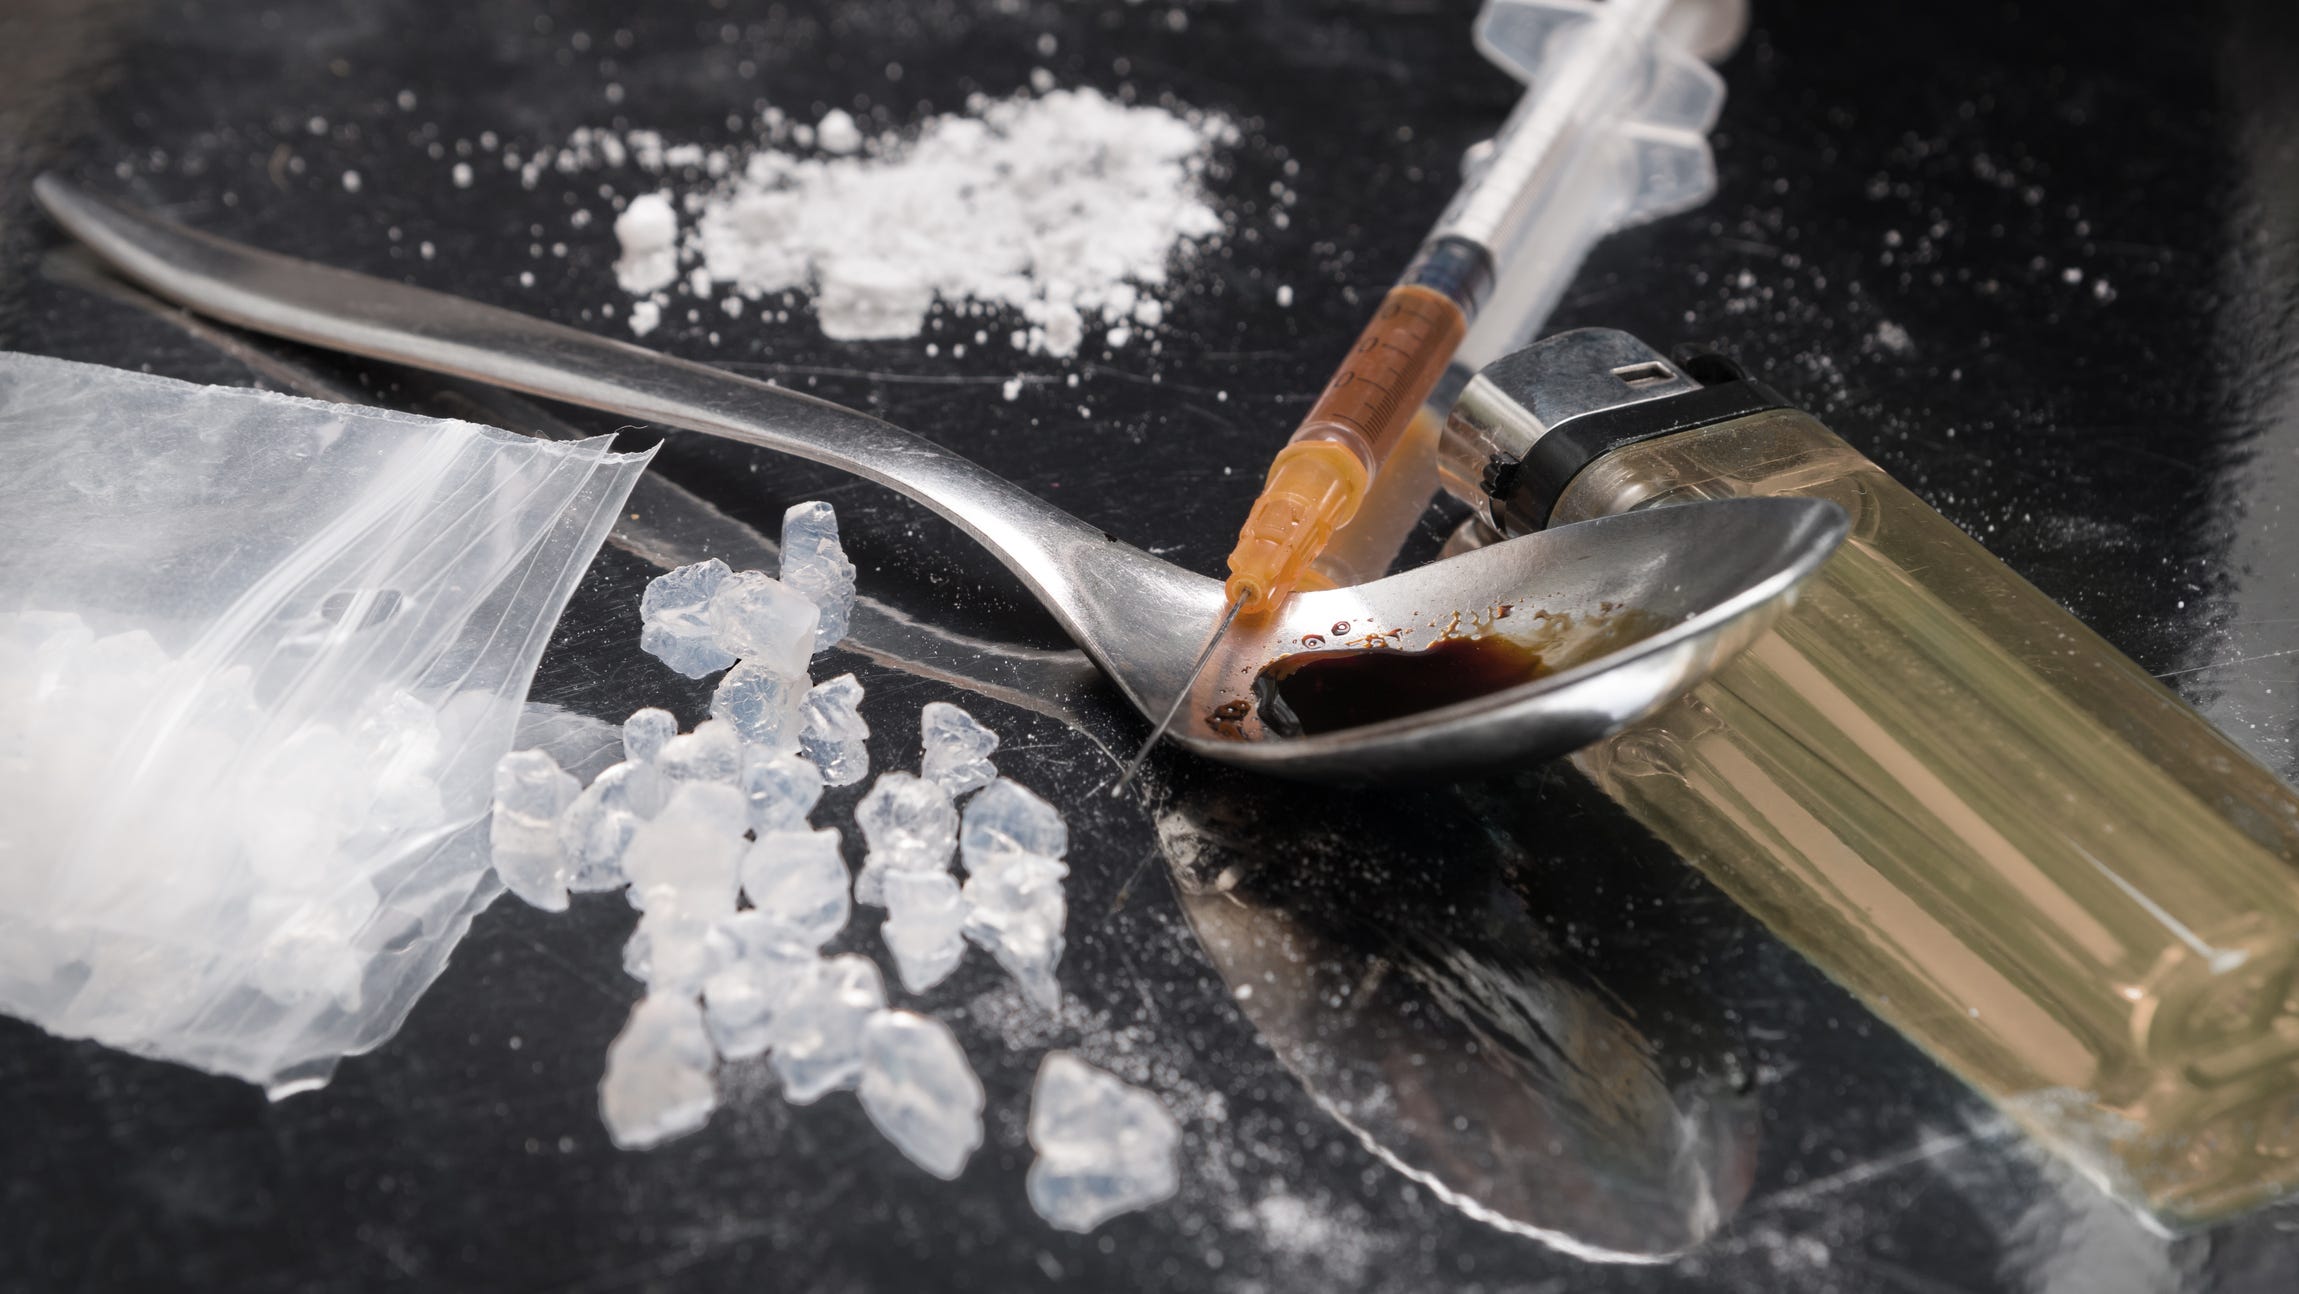 Pria North Hampton dijatuhi hukuman 18 bulan karena menyelundupkan metamfetamin yang dibelinya secara online